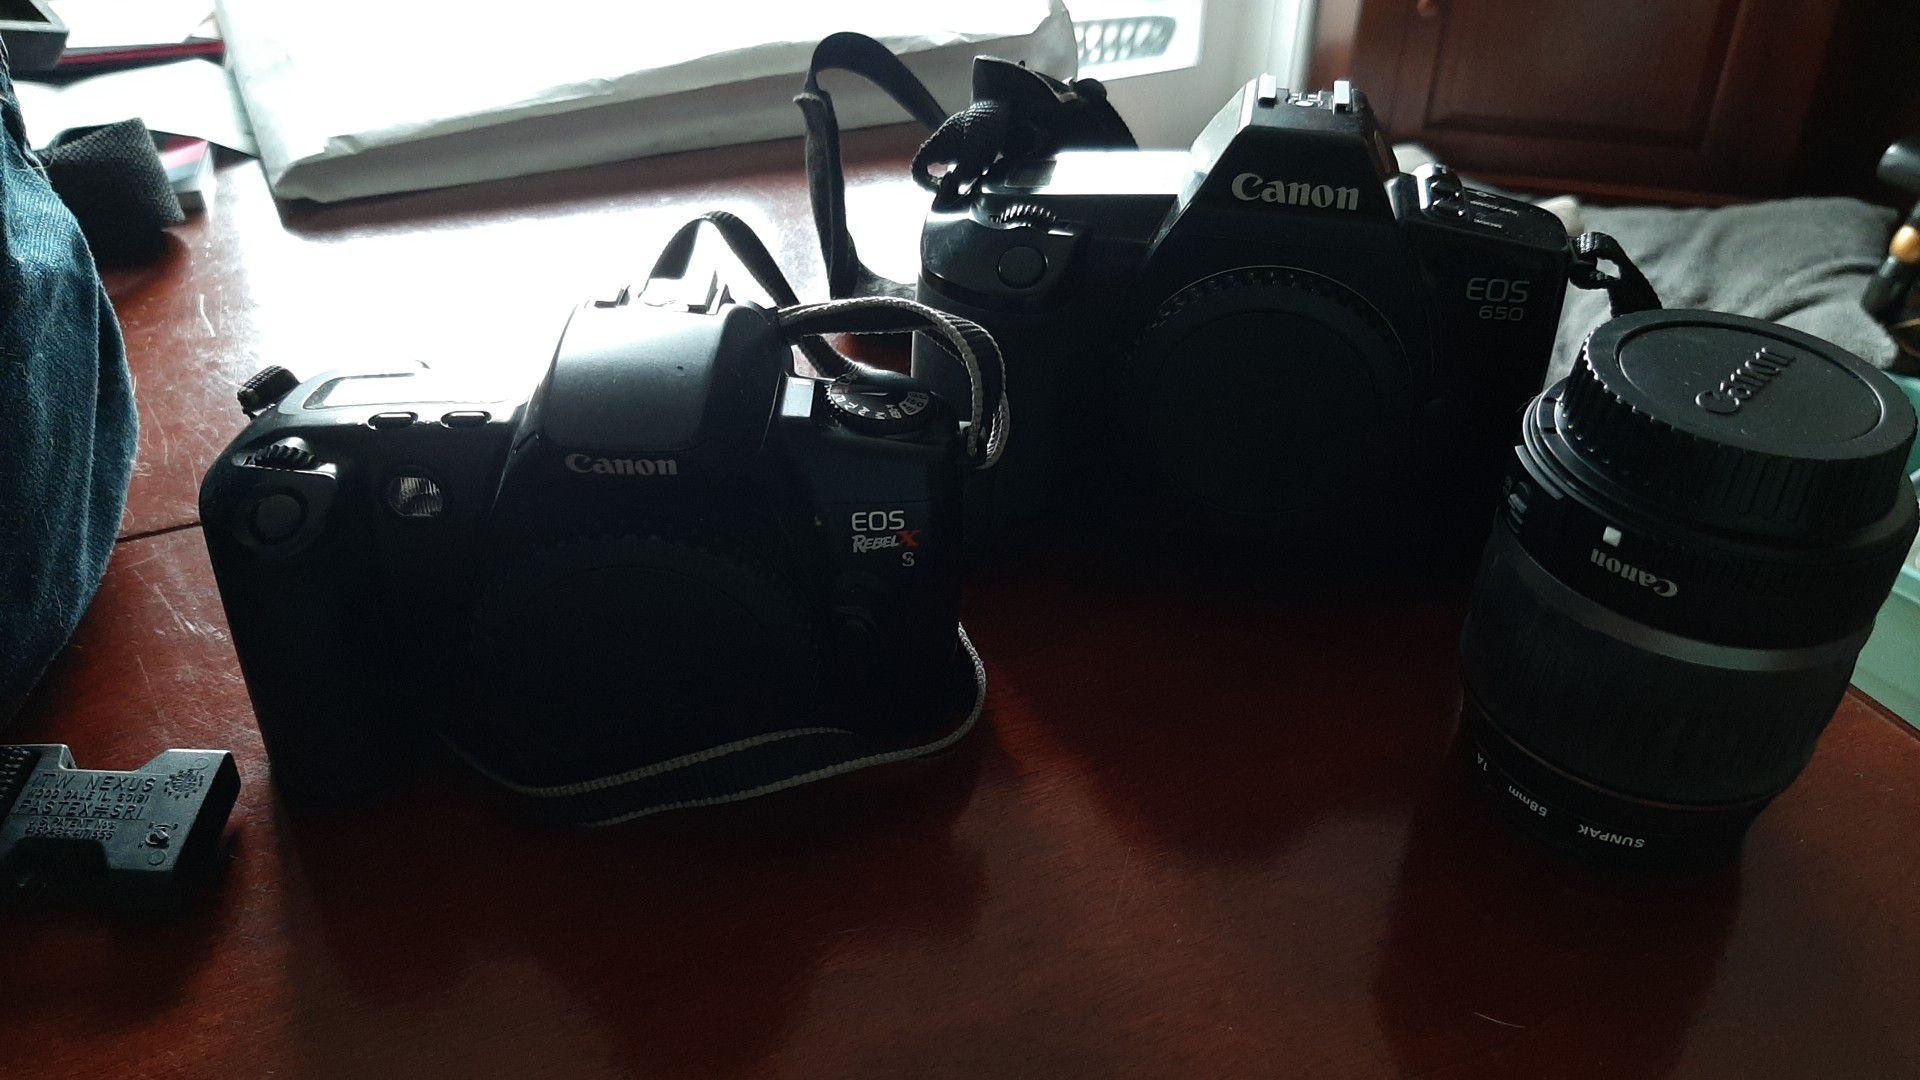 2 Cameras and a lens (Canon EOS 650 & Canon EOS Rebel X S)